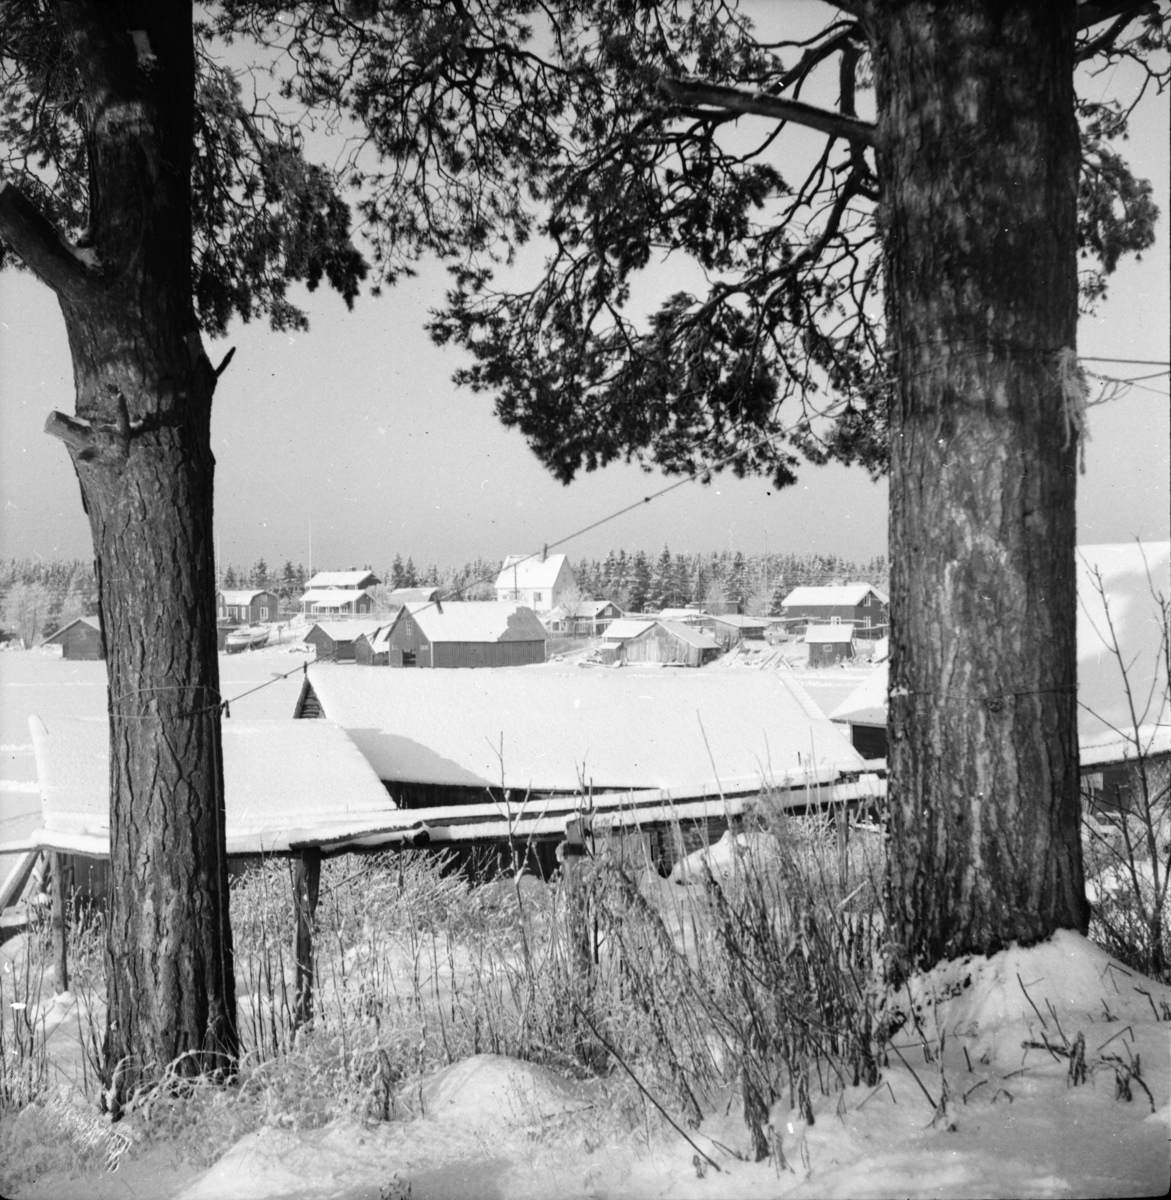 Vinterbilder
Skärså 1955